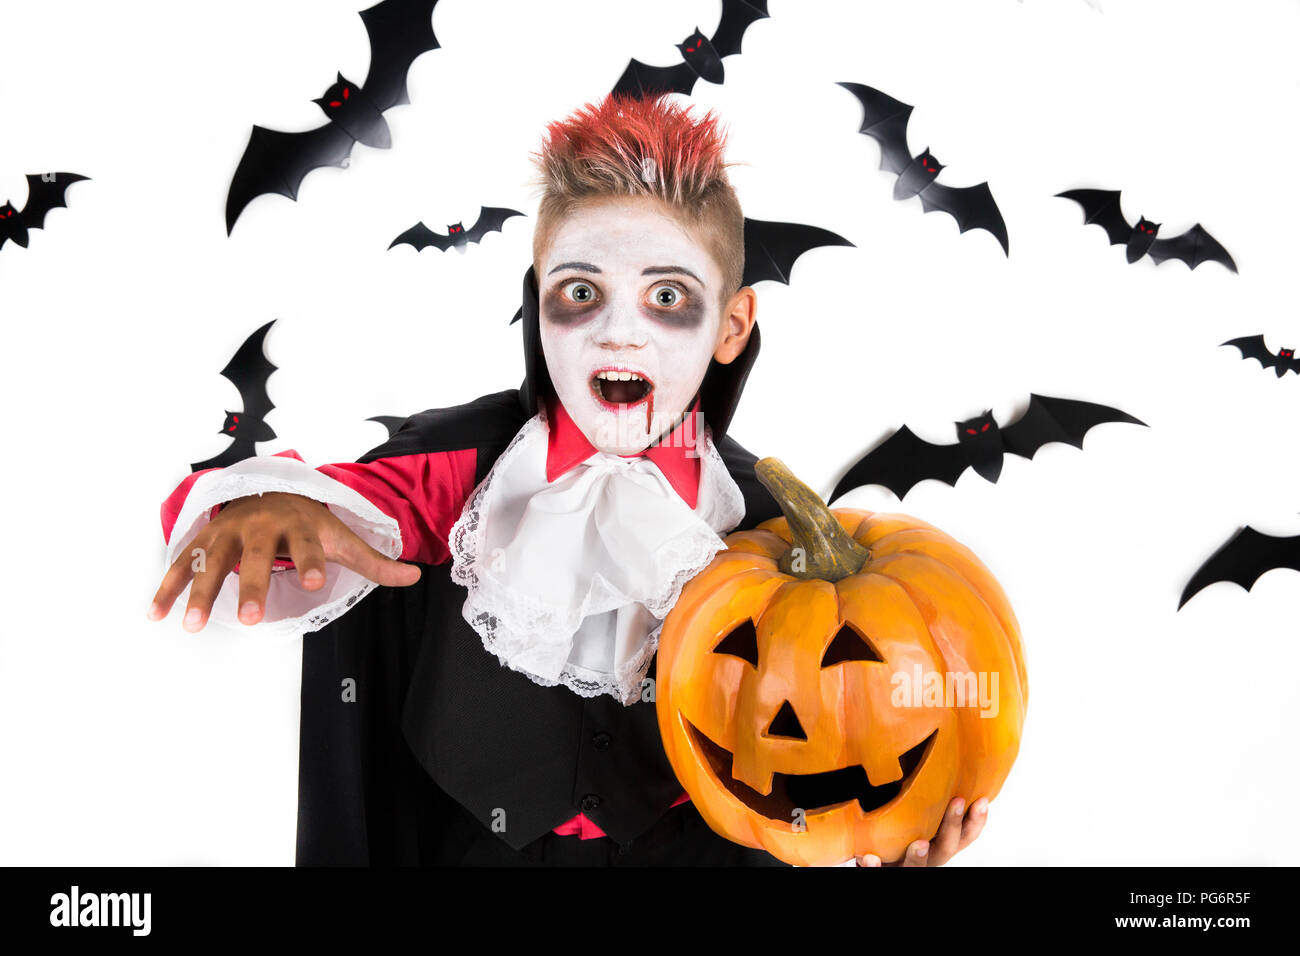 Scary Halloween vampire boy vestite per spooky Halloween party e la tenuta di un arancione zucca di halloween jack o lantern Foto Stock